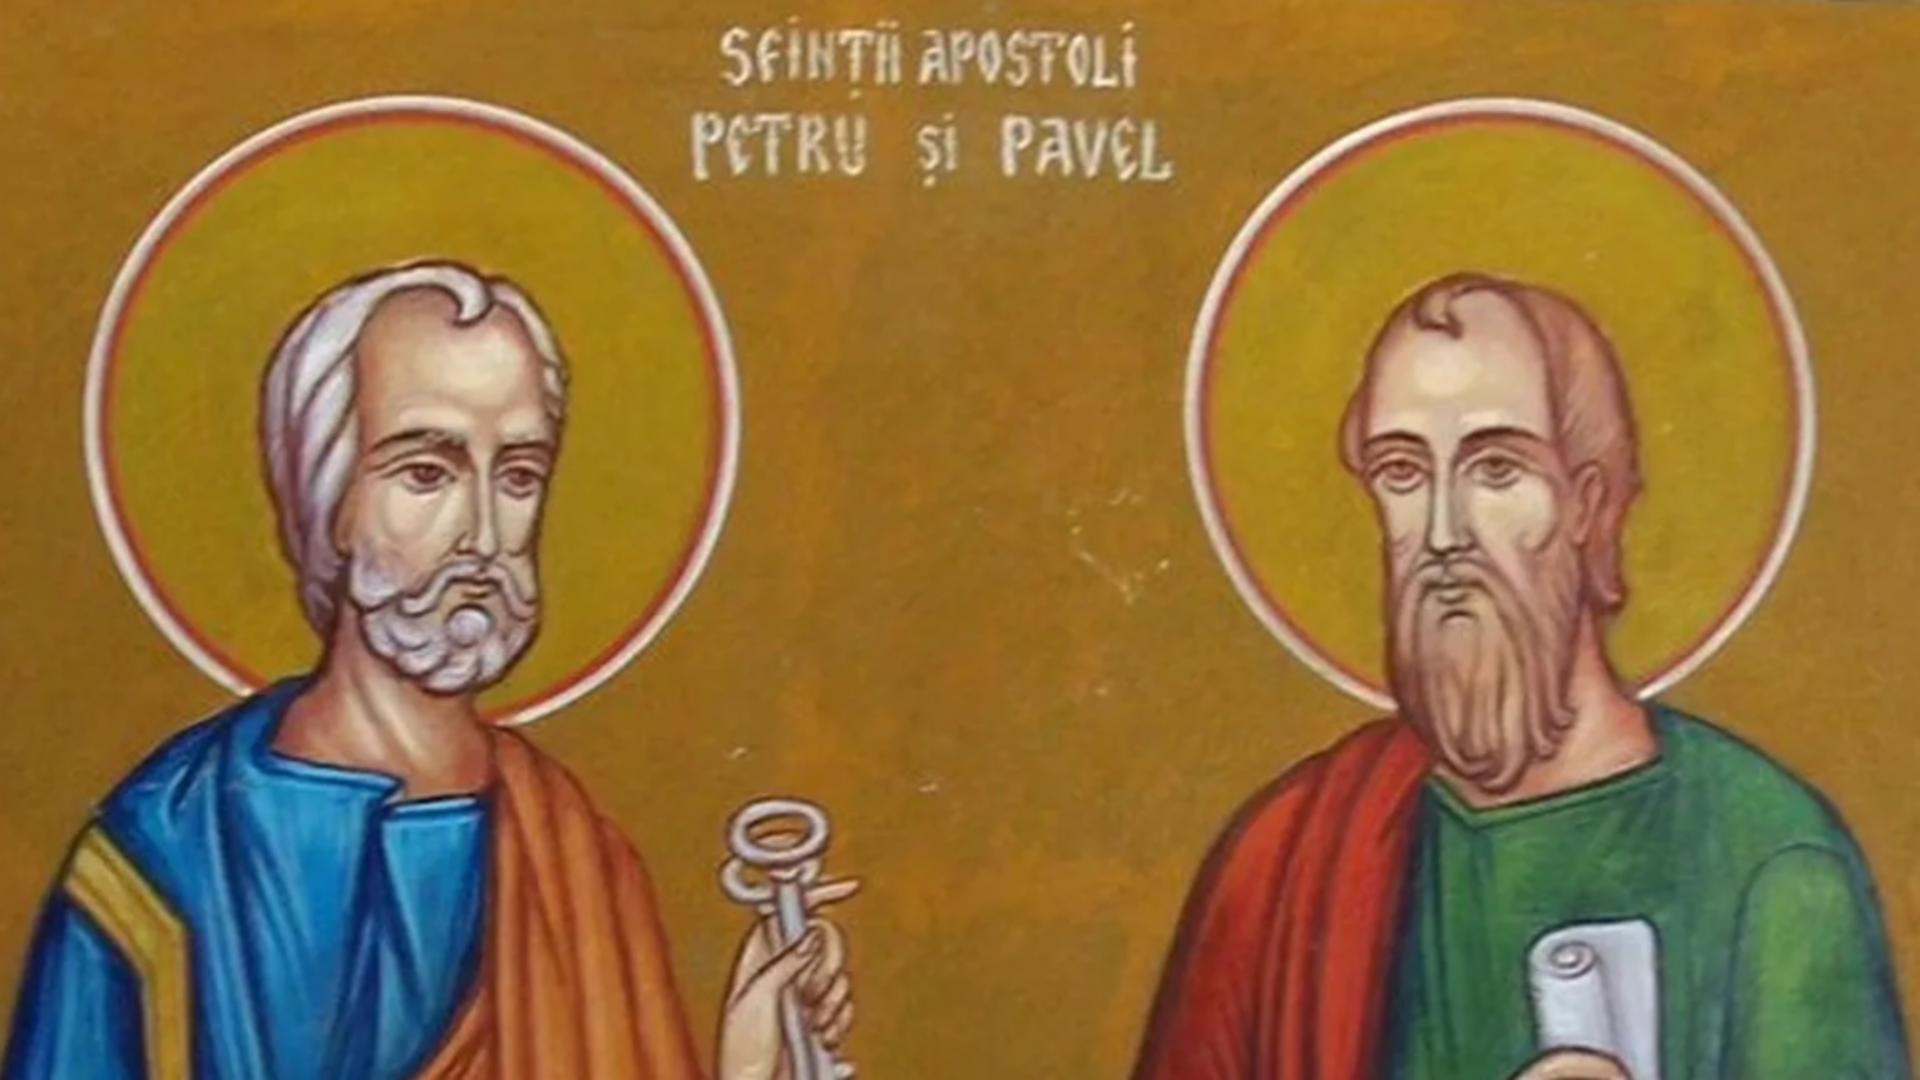 Sfinții Apostoli Petru și Pavel, 29 iunie